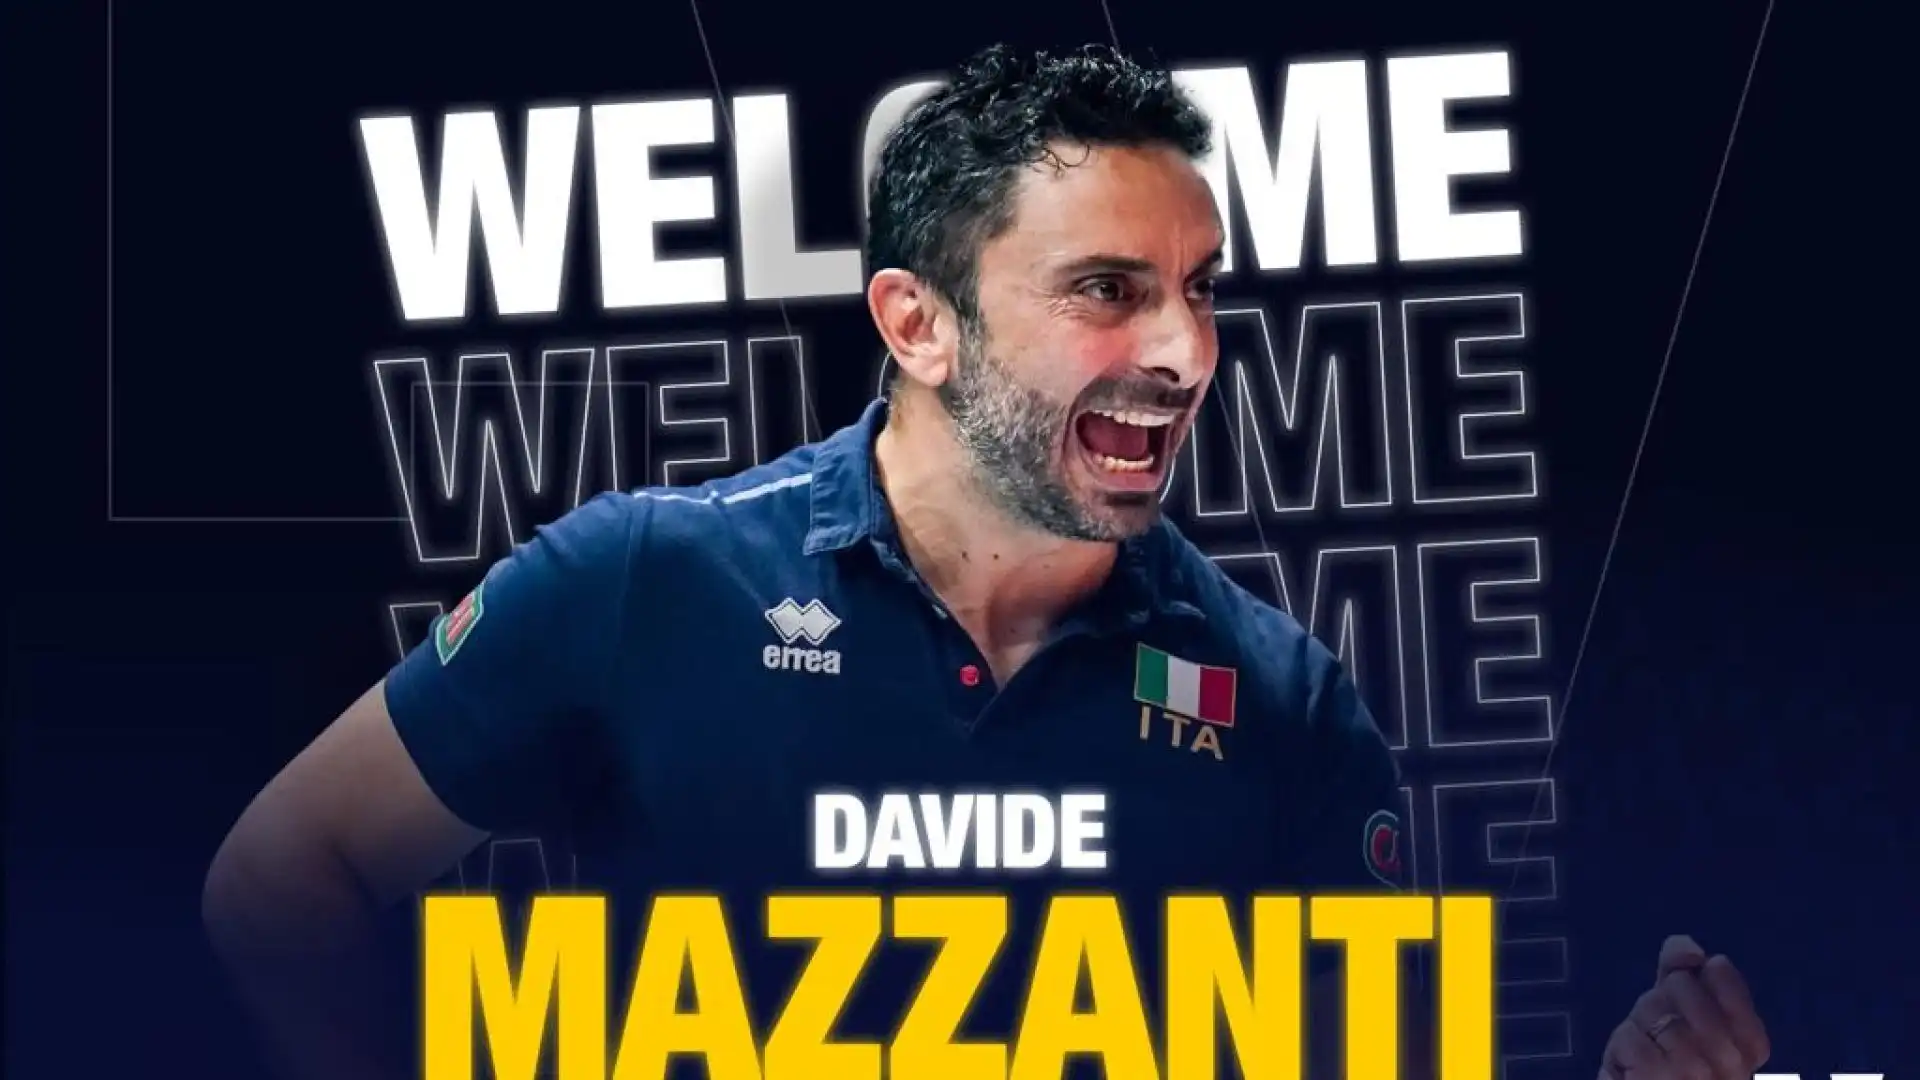 Davide Mazzanti è il nuovo allenatore dell'Itas Trentino.